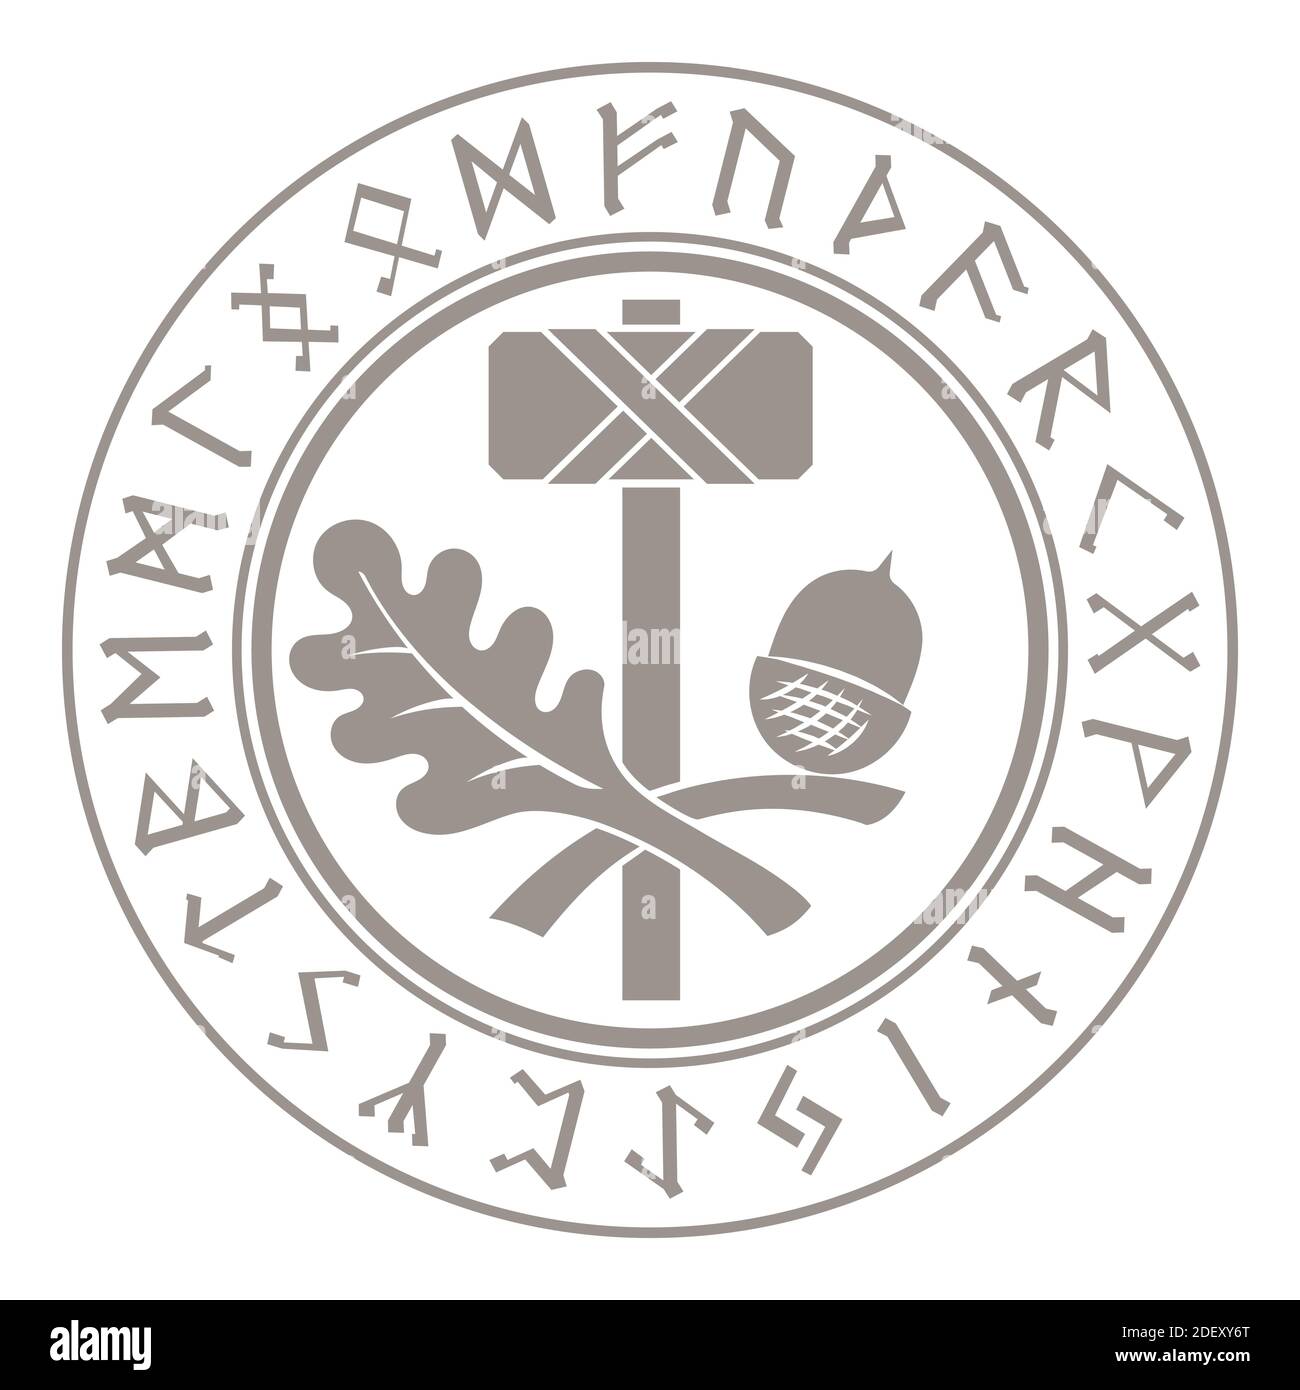 Martello Thors - Mjolnir. Rune scandinave e ornamento di foglie di quercia Illustrazione Vettoriale